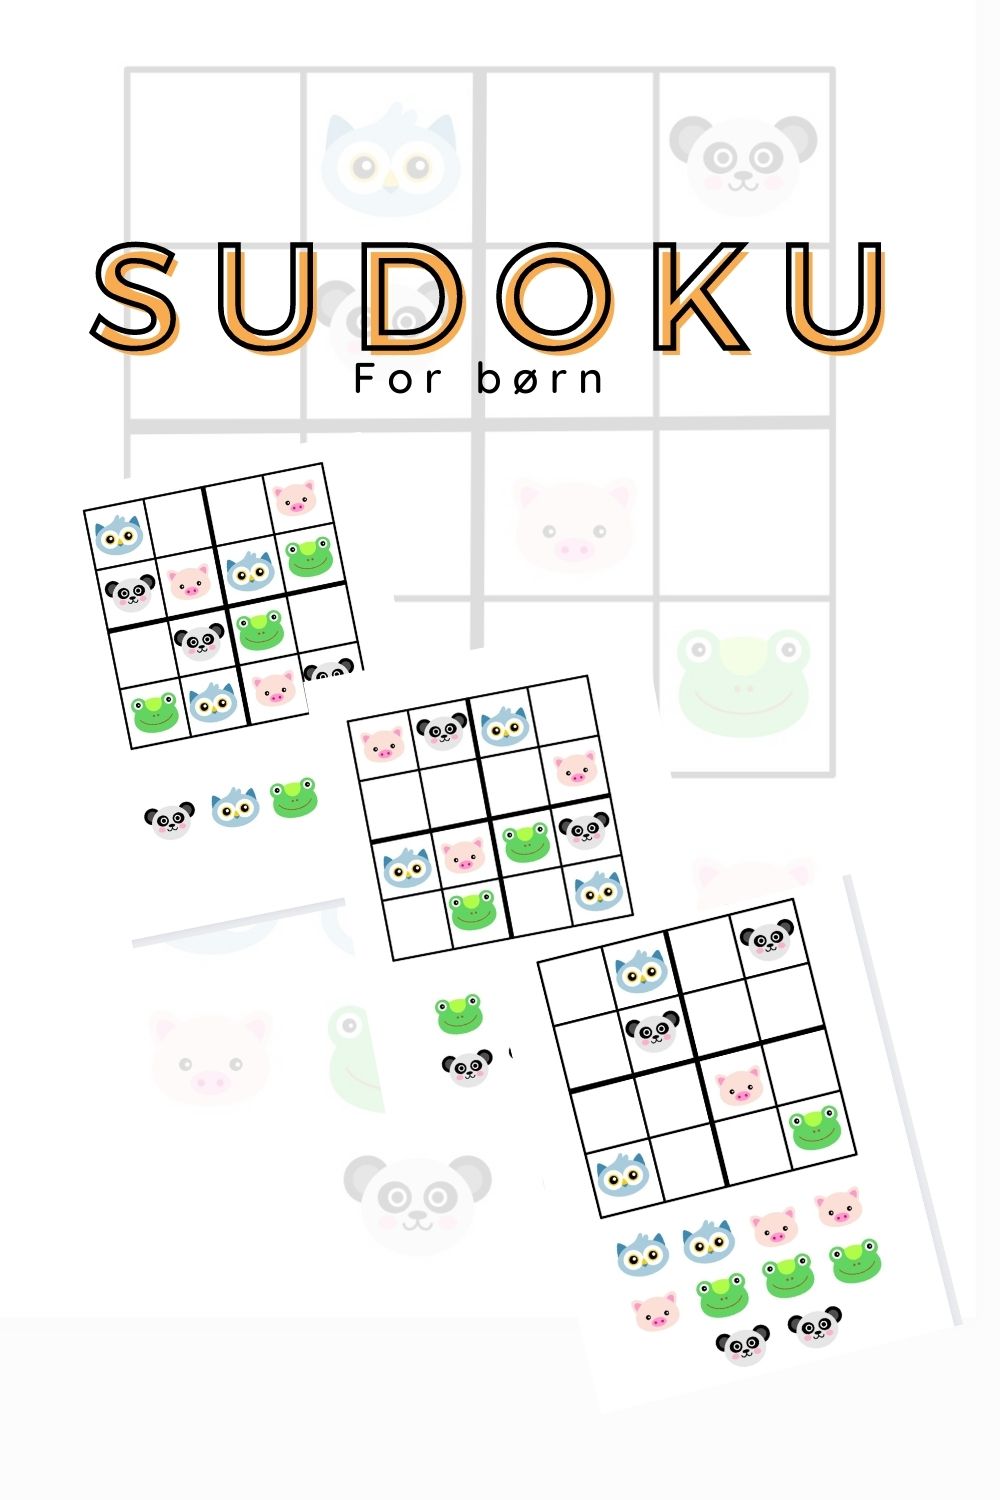 Se Sudoku for børn med billeder - 4x4 - print selv hos Farverige Dage